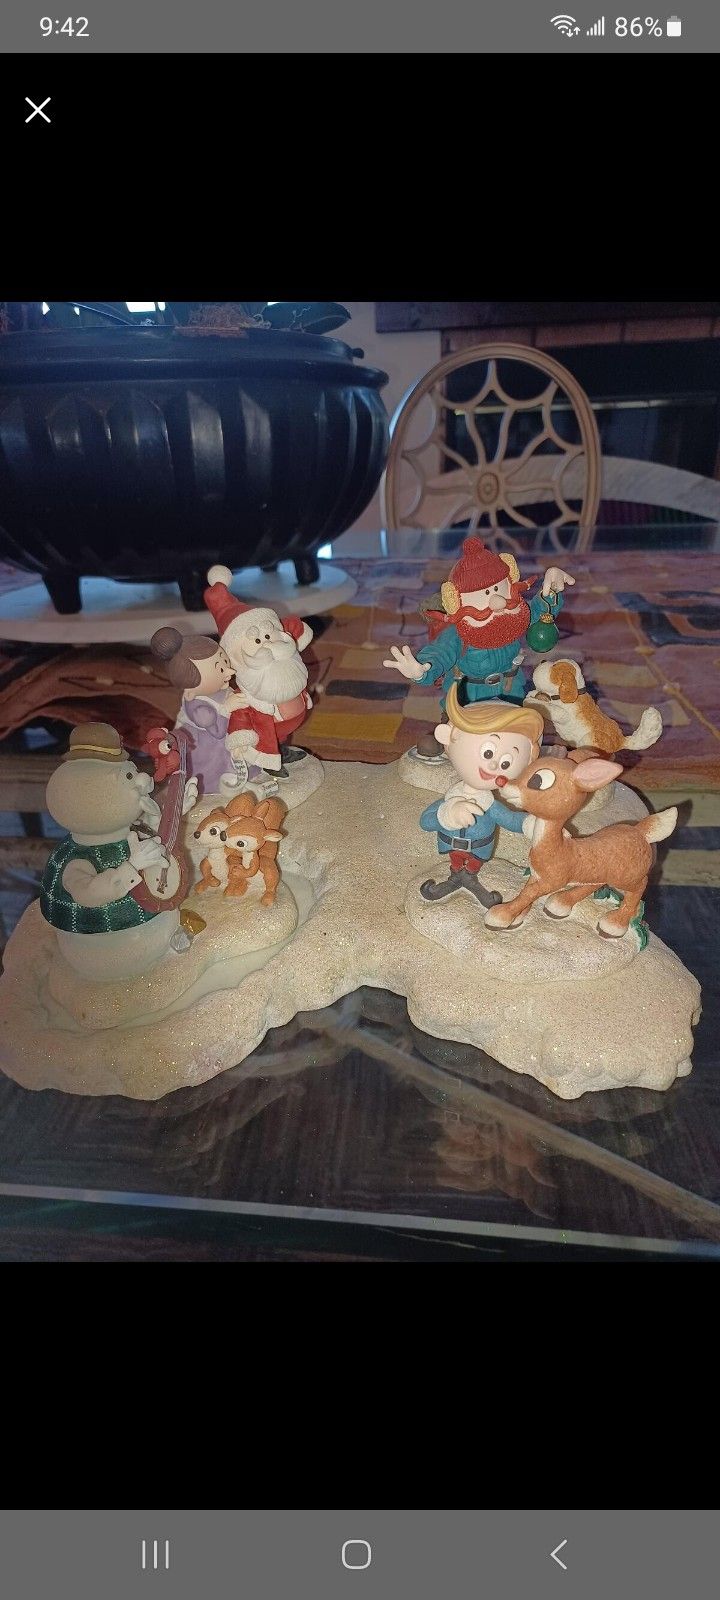 Island Of Misfit Toys Rudolph Enesco Figurines Set $150